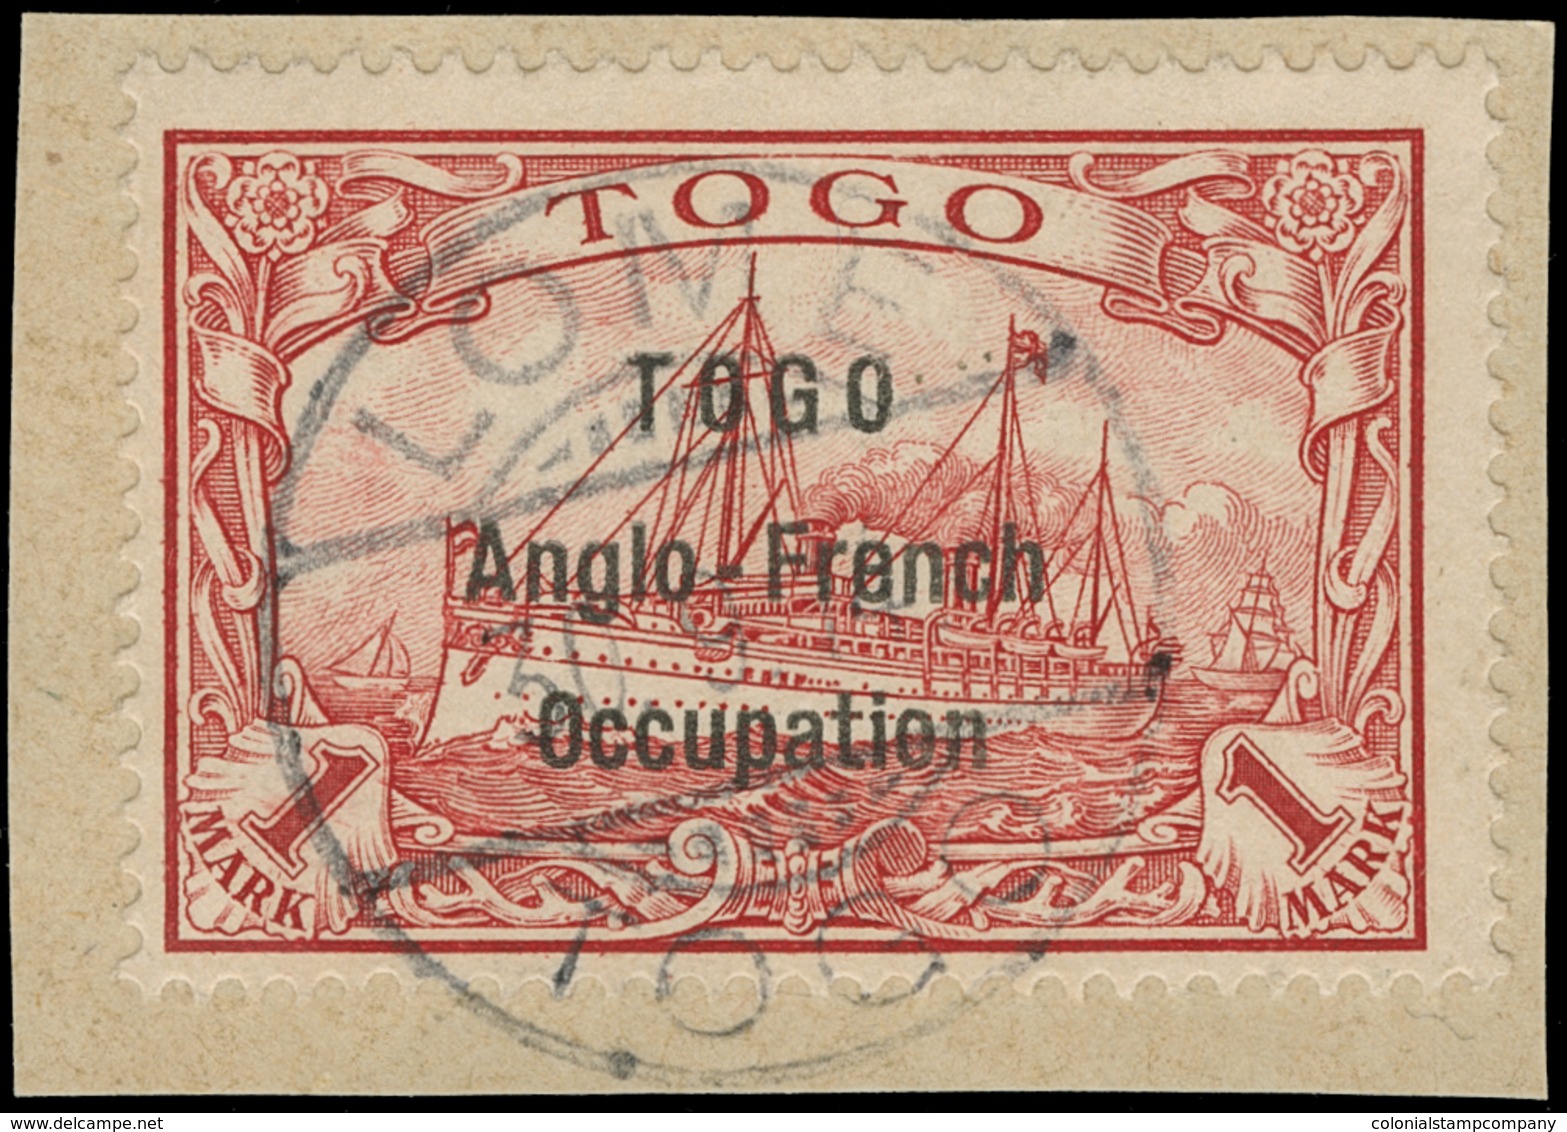 OnPiece Togo - Lot No.1370 - Togo